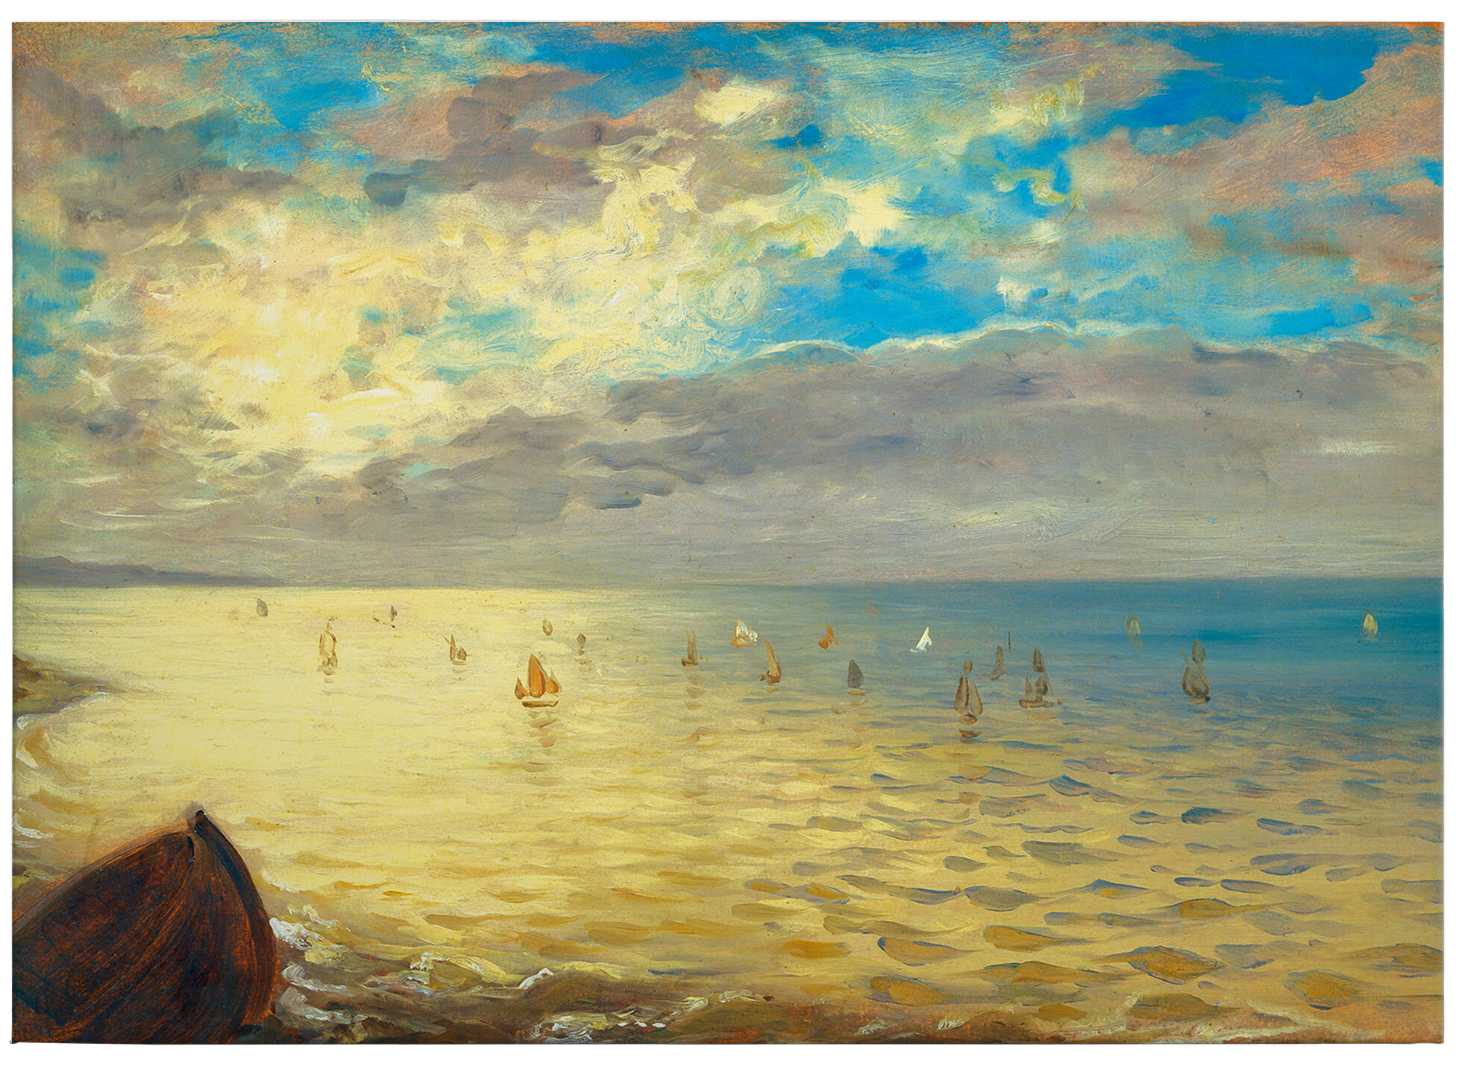             Tableau d'art sur toile "La mer" de Delacroix - 0,70 m x 0,50 m
        